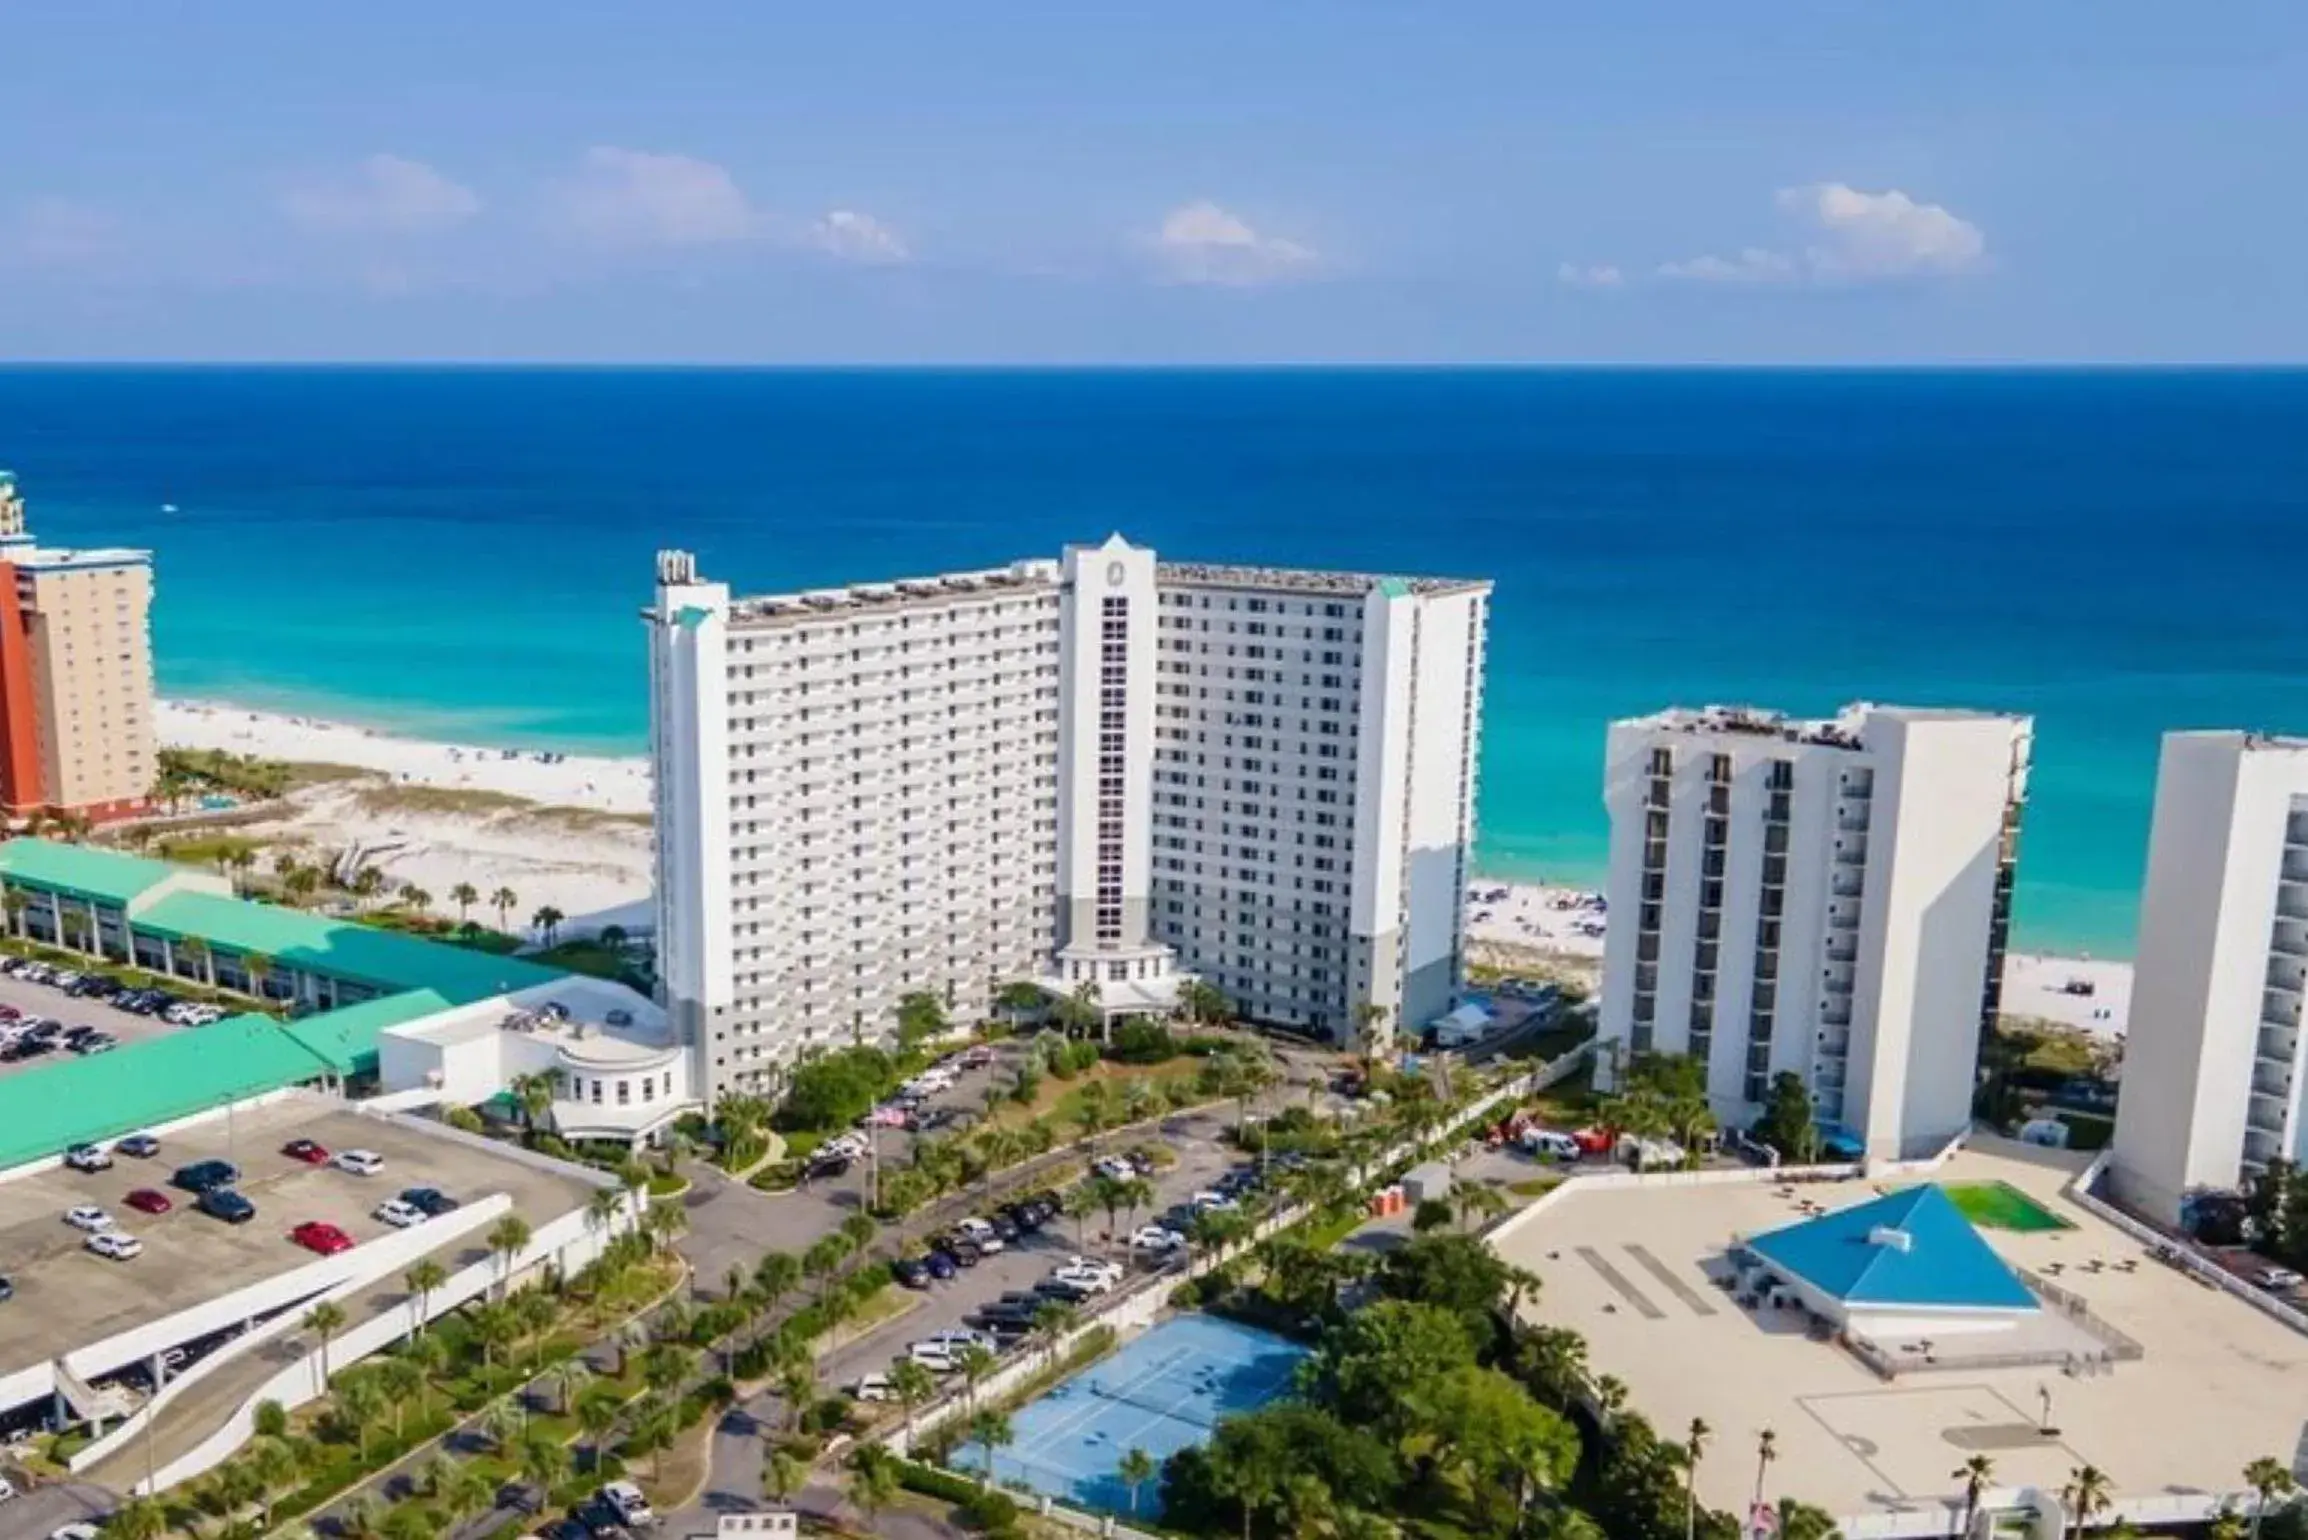 Property building, Bird's-eye View in Pelican Beach Resort by ResortQuest